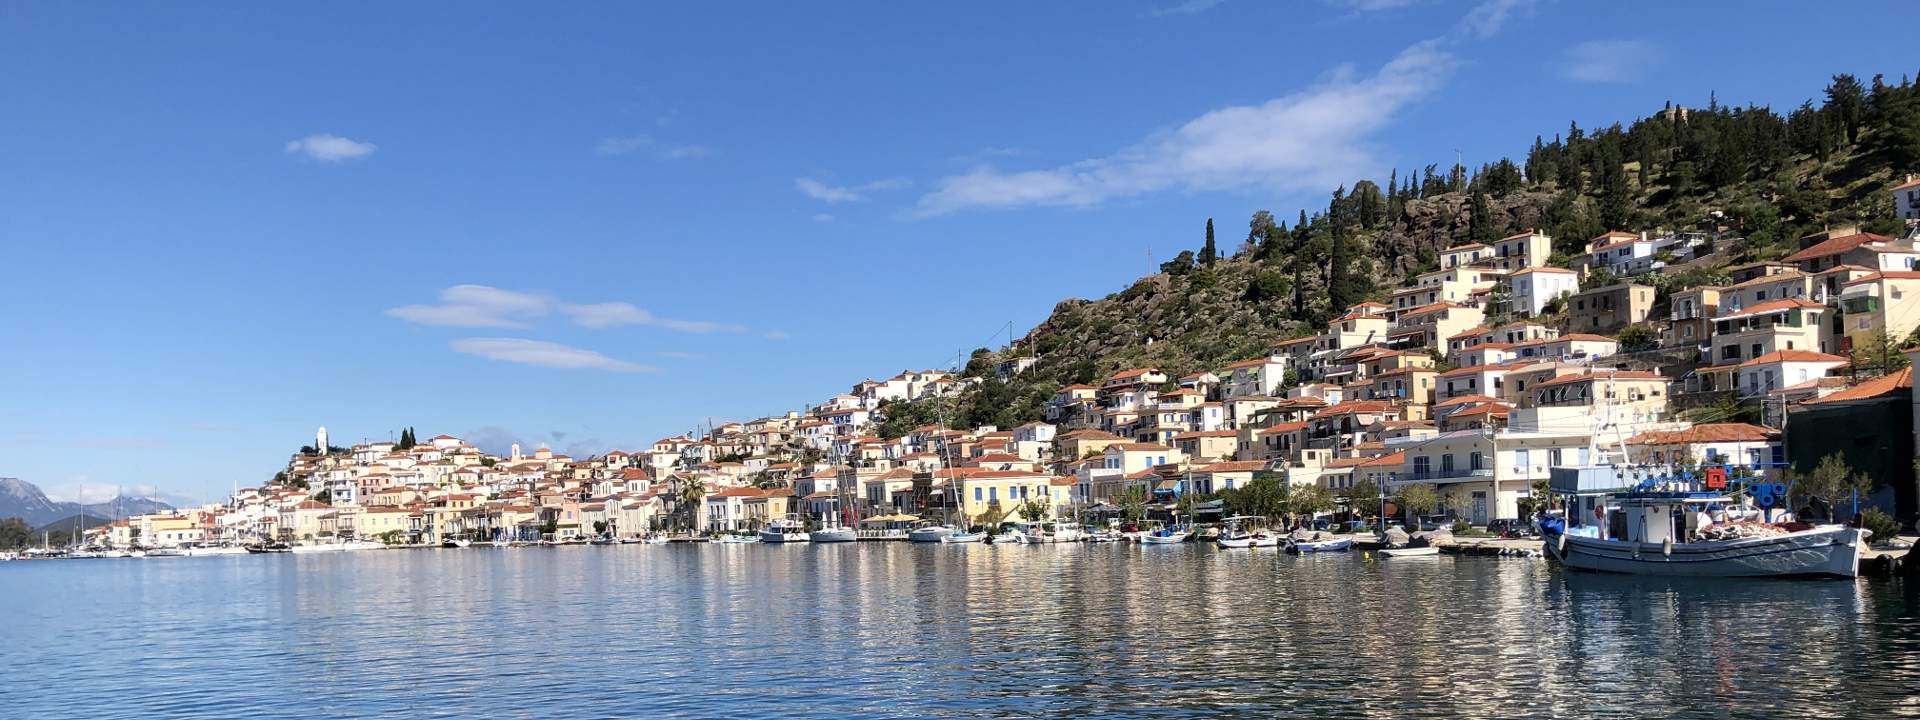 Une semaine en Grèce en catamaran rien que pour vous